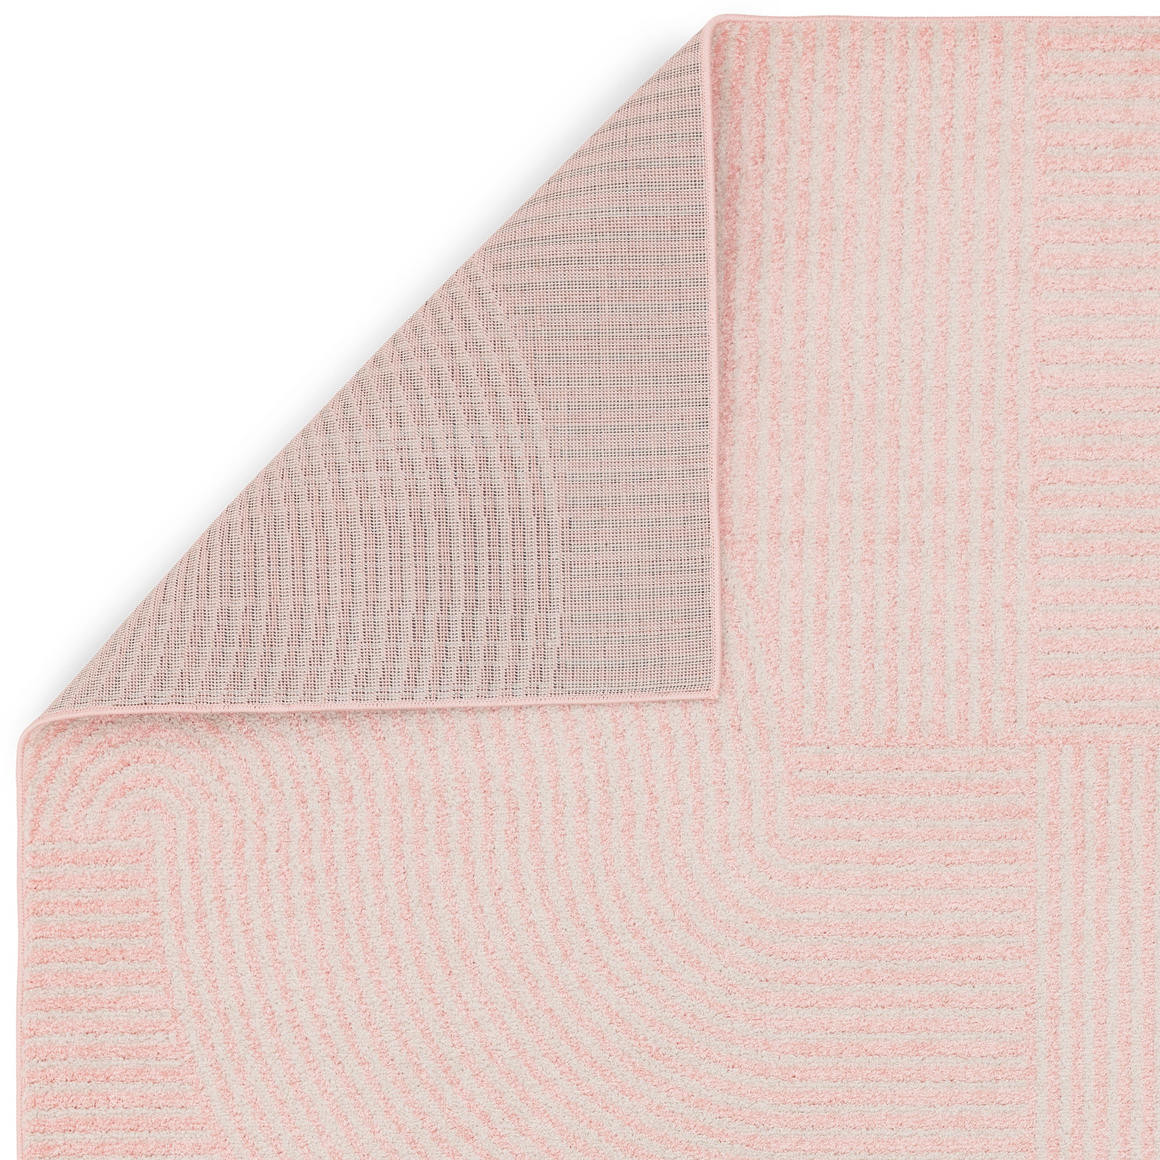 Koberec Muse MU17 ružový Geometric